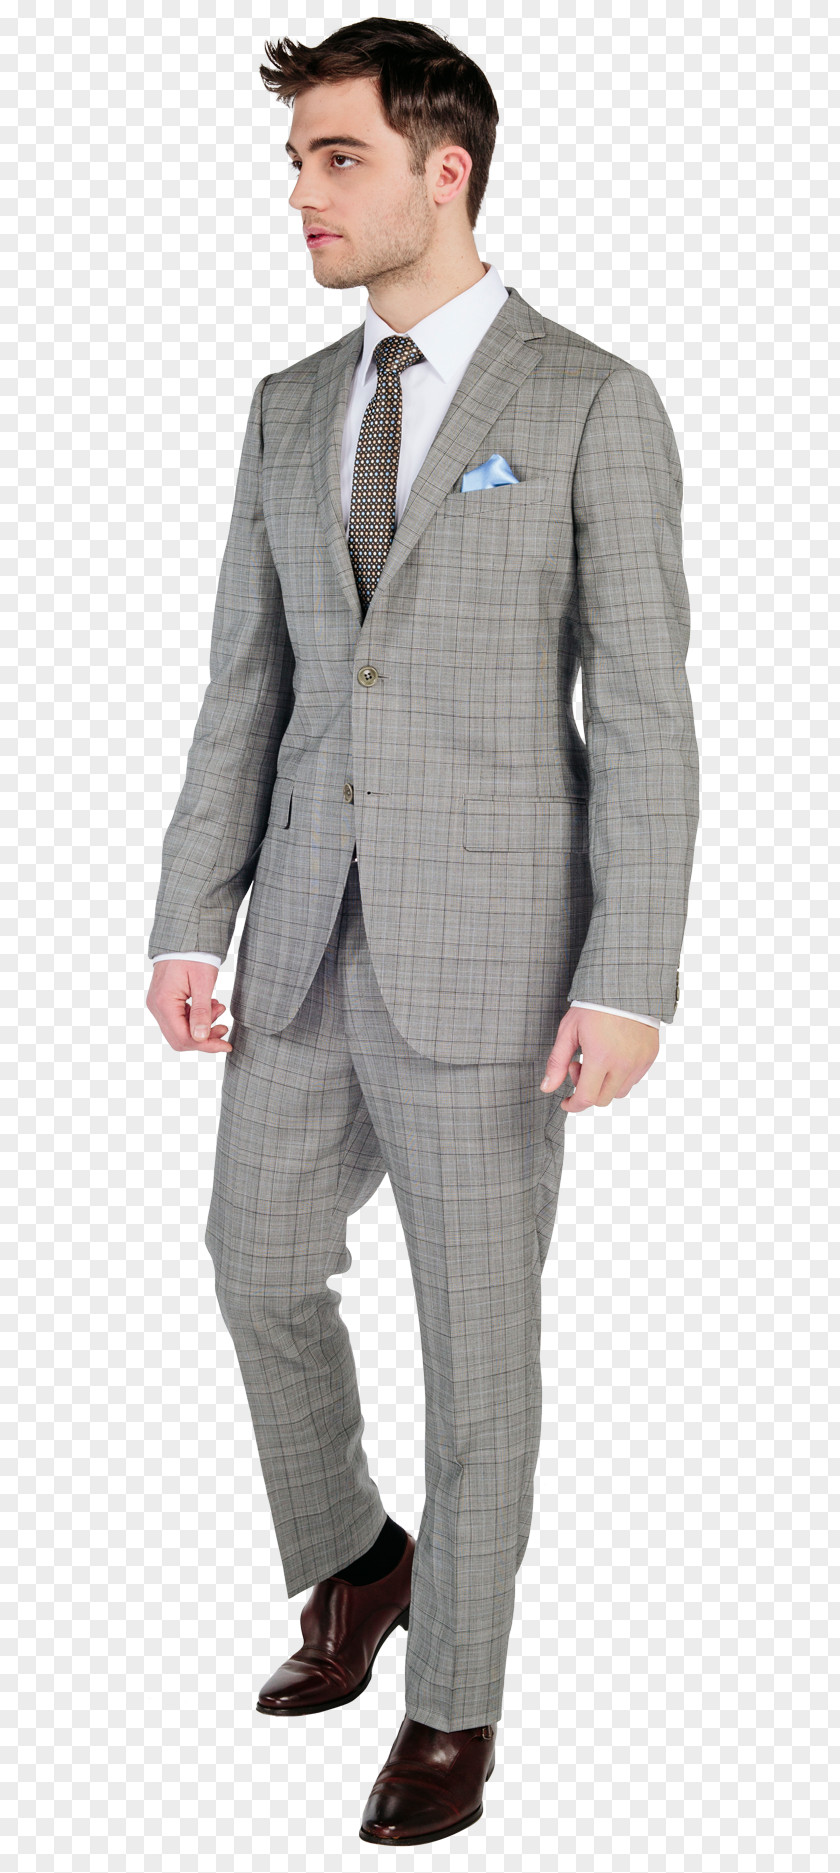 Businessman Suit Businessperson Tuxedo PNG